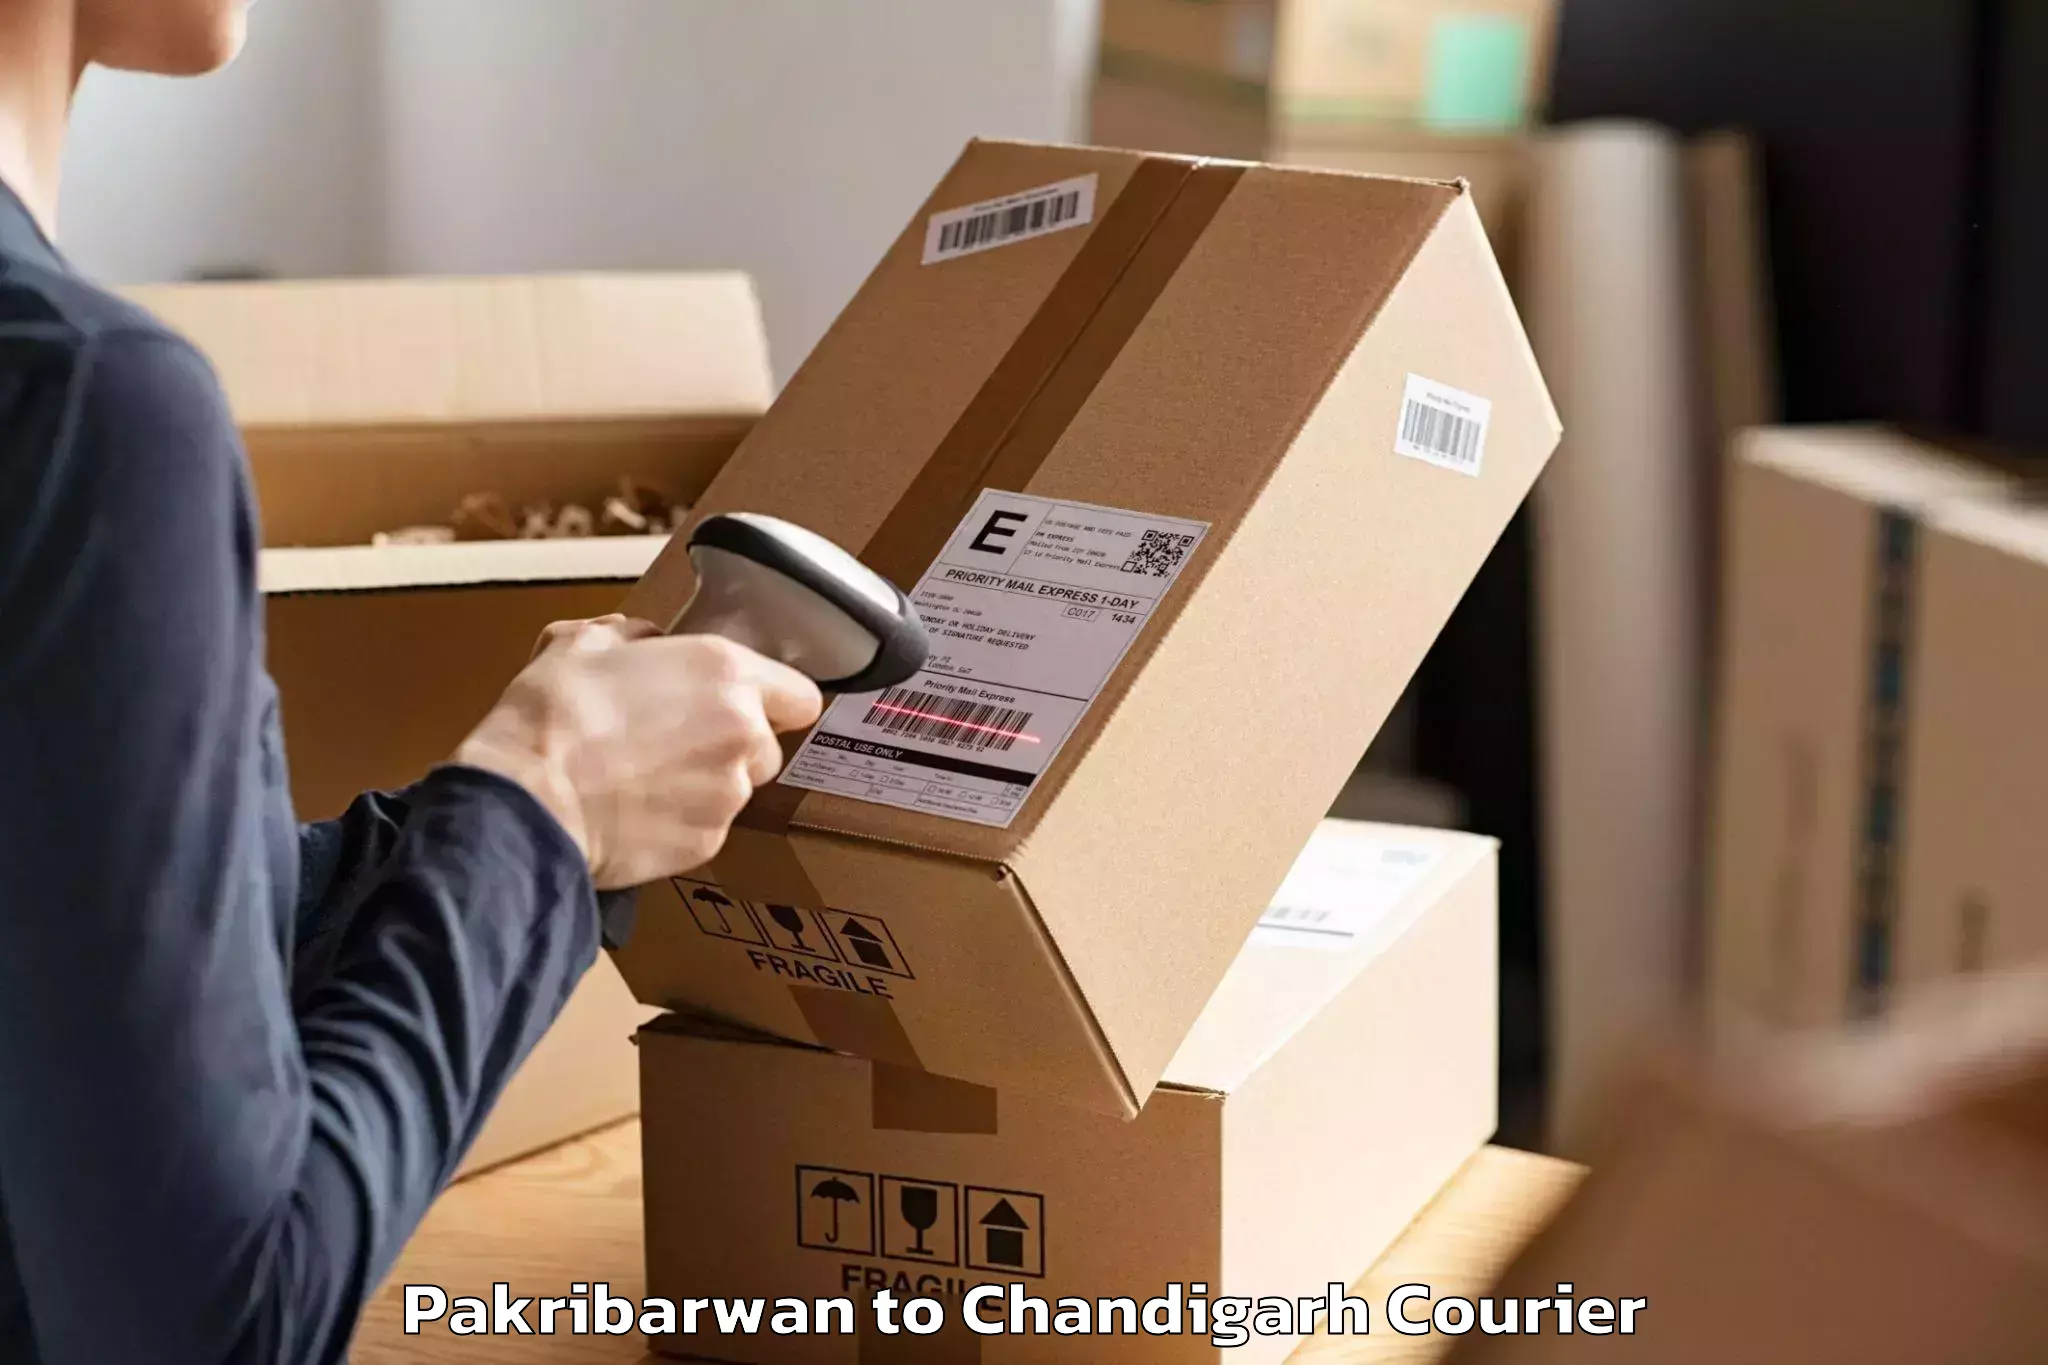 Moving and packing experts Pakribarwan to Chandigarh